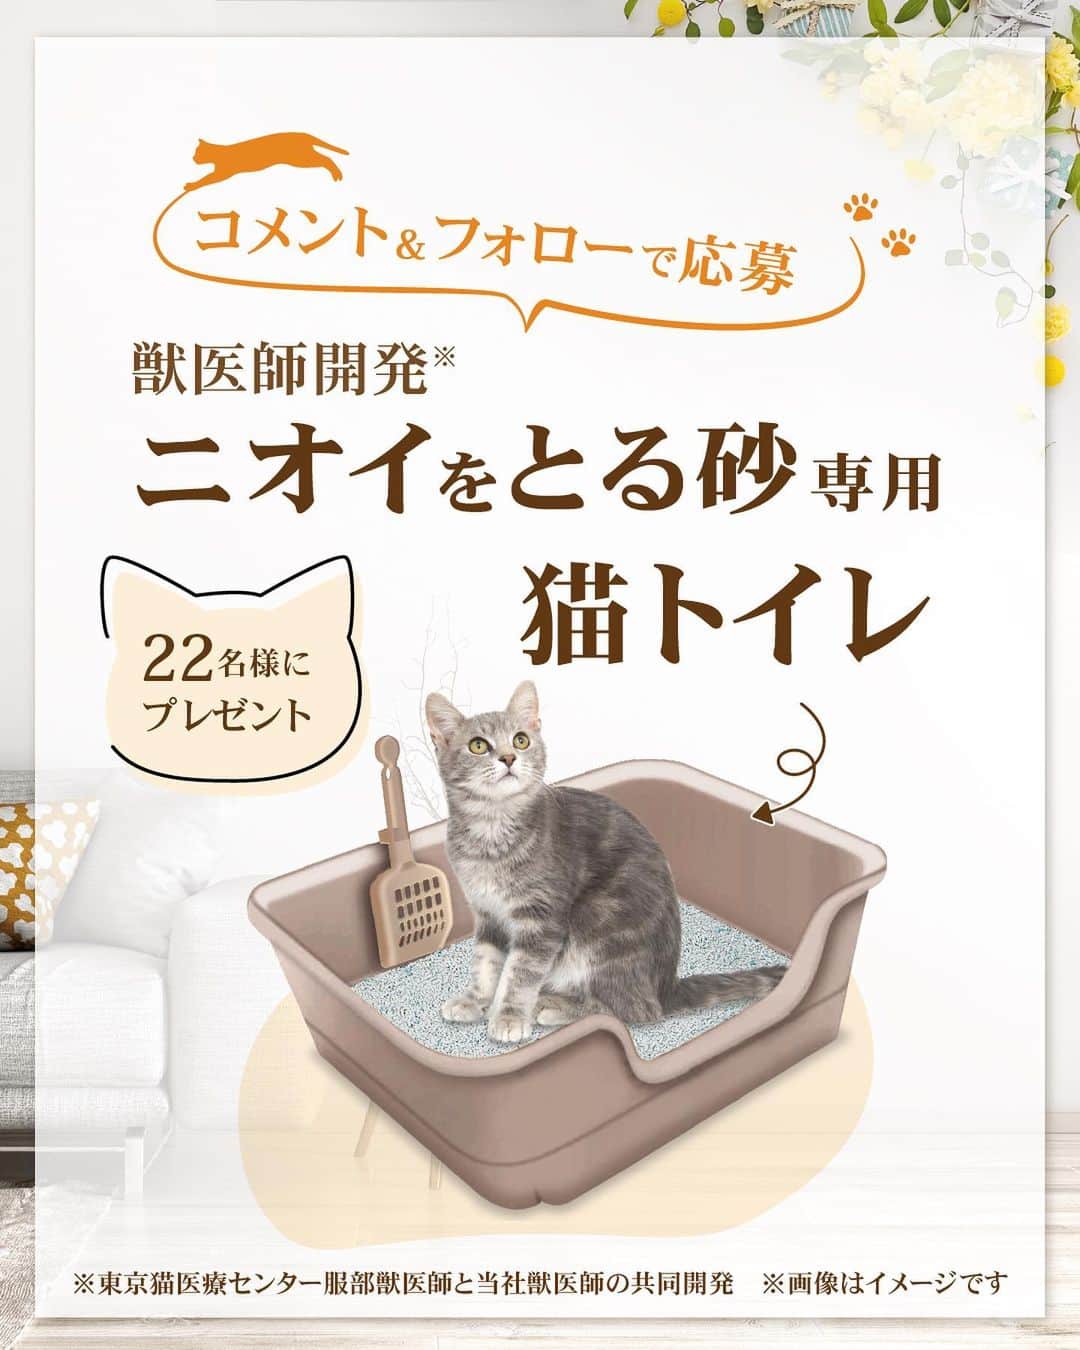 ライオン商事株式会社のインスタグラム：「今月は『ナチュラルブラウン』🤎 コメント＆フォローで猫トイレセットプレゼント🎁  💡コメントのお題💡 『猫ちゃんのトイレ容器を買いかえるきっかけは？』💬  猫はトイレにとてもこだわる動物。🐈 愛猫が喜ぶ快適なトイレ環境を用意してあげることはオーナーの大切な役目です。  『獣医師開発（※）ニオイをとる砂専用猫トイレ』は、 「猫ちゃんとオーナーにとって理想のトイレ環境」を 目指した、固まる猫砂専用の猫トイレです❣️ ※東京猫医療センターの服部獣医師と当社獣医師の共同開発  今月は、【ナチュラルブラウン】のトイレセットをプレゼント！ 猫ちゃんが喜ぶトイレ環境、作ってみませんか？😆  みなさんからのたくさんのご応募お待ちしております🍀  ■応募期間 2023年10月10日（火）～10月24日（火）  ■応募方法 ①ライオンペット公式アカウント@lion_pet_cat をフォロー！ ②こちらの投稿にあなたの答えをコメントして完了！ 　『猫ちゃんのトイレ容器を買いかえるきっかけは？』  ・ご応募は1アカウント様につき、1回と限らせていただきます ・ストーリーズ投稿は対象外となります  ■当選人数 22名様　  ■プレゼントセット内容 【獣医師開発　ニオイをとる砂専用　猫トイレ ナチュラルブラウン】1個 【ニオイをとる砂 5L】2袋 【シュシュット！厚手おそうじシート 猫用】1個 【ニオイをとる砂　ウンチもオシッコも臭わない袋】試供品  ■抽選・当選連絡について 応募いただいた方の中から抽選を行い、 当選者の方へDM連絡をいたします。  ■利用規約 本キャンペーンへ参加される場合は、本応募要項に同意いただいた上でのご応募となります。 応募要項にご同意いただけない場合は、キャンペーンに応募することができません。 また、本キャンペーンへの応募をもって、本応募要項に同意したものとみなします。   ■応募資格 ・日本国内にお住まいの方で、かつ賞品のお届け先が日本国内の方に限らせていただきます。 ・ライオンペット公式Instagramアカウント「@lion_pet_cat」をフォローされている方が対象です。 ※賞品発送時点まで当社アカウントをフォローされている必要があります。 ・キャンペーン期間中に、Instagramのアカウントを保有しており、Instagramアカウントを公開設定にしている方。 ※Instagramアカウントを非公開にしている場合、ツイートを確認することができないため本キャンペーンには参加できません。 ※Instagramアカウントを削除された場合、当選のご連絡を差し上げることができないため本キャンペーンで当選された場合も無効となります。 ・本規約について同意されている方。  ■応募に際する注意事項 ・DMと当選品の発送をもって当選者の発表と代えさせていただきます。 ・非公開アカウントは対象外となりますのでお気を付けください。 ・複数アカウントを使用しての応募は無効となります。 ・投稿を複数行っても応募は１回分のみのカウントとなります。 ・当選品は当選の連絡後2週間以内程度、国内のみの発送です。 ・本キャンペーンにご応募いただくにあたり、応募者はキャンペーンの運用について本アカウントの運用方法に従うものとし、一切異議申立てを行わないものとします。 ・本キャンペーンは予告なく中止、または変更をさせて頂く場合がございます。 ・本キャンペーンは、Meta社・Instagramとは一切関係ありません。 ・イベントは中止となる可能性があります。 ⚠️なりすましアカウントにご注意ください。本キャンペーンの当選者の方には、DMよりご連絡させていただきますが、DM上でクレジットカード情報などの個人情報の入力を促すことはございません。 ※ライオンペット公式アカウントは、青色の認証バッジがついている@lion_pet_cat @lion_pet_dog の2つです。公式アカウント以外からのフォローや不信なDMを受け取った場合は、URLのクリックや、個人情報などの入力、返信やフォローは行わないでください。  【個人情報の取扱いについて】 ・当選時にご入力いただきます個人情報は、当選品発送のみに使用し、それ以外の目的では利用いたしません。 本キャンペーンへの応募をもって、個人情報の取扱いに同意したものとみなします。  #獣医師開発猫トイレ #ニオイをとる砂 #猫トイレ #ねことくらす #ネコのいる暮らし #猫のいるくらし #ねことの生活 #ねこ #ネコ #猫 #にゃんこ #ニャンコ #ねこ部 #ネコ部 #猫部 #ねこスタグラム #ネコスタグラム #猫スタグラム #ねこのいる生活 #ネコのいる生活 #猫のいる生活 #ねこ好きさんと繋がりたあ #ネコ好きさんと繋がりたい #猫好きさんと繋がりたい #猫大好き部 #保護猫 #保護猫と暮らす #ライオンペット #lionpet #lionpetcat」